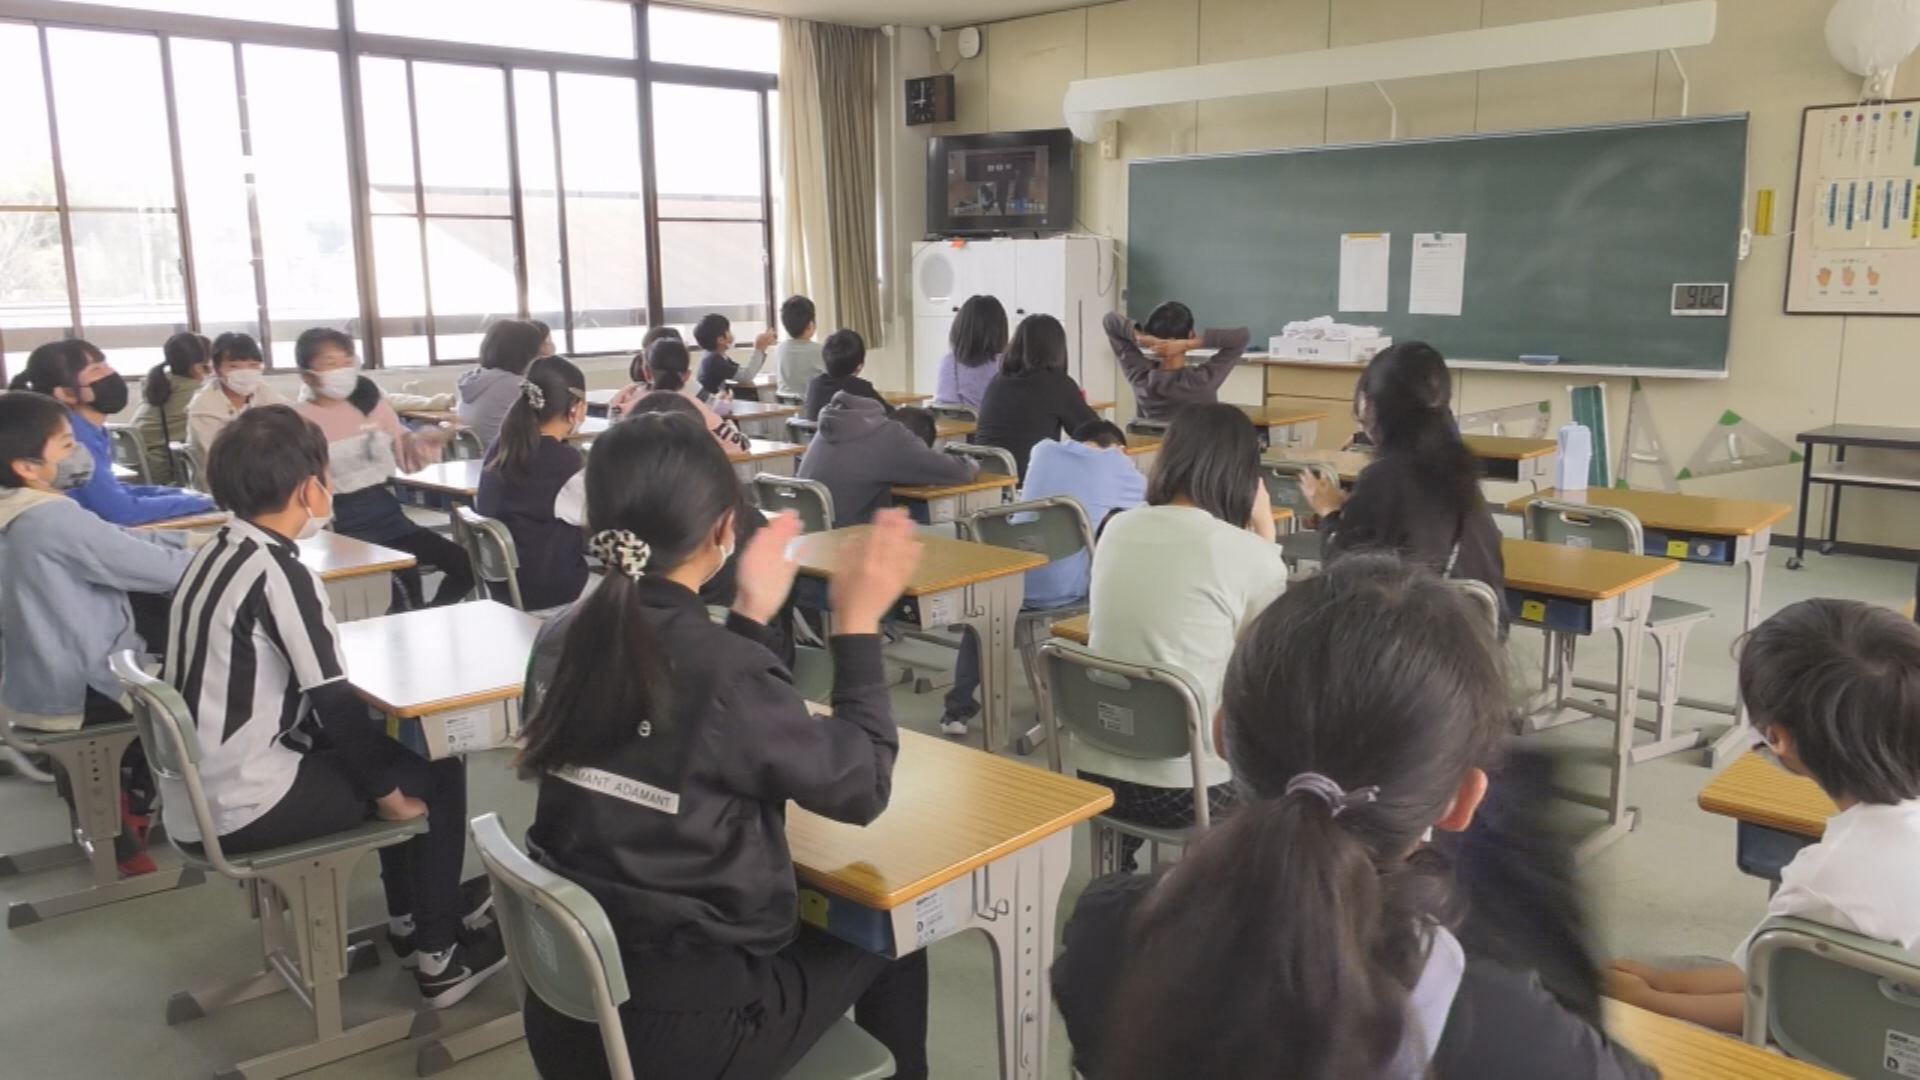 緒川小学校 始業式 | メディアスチャンネル